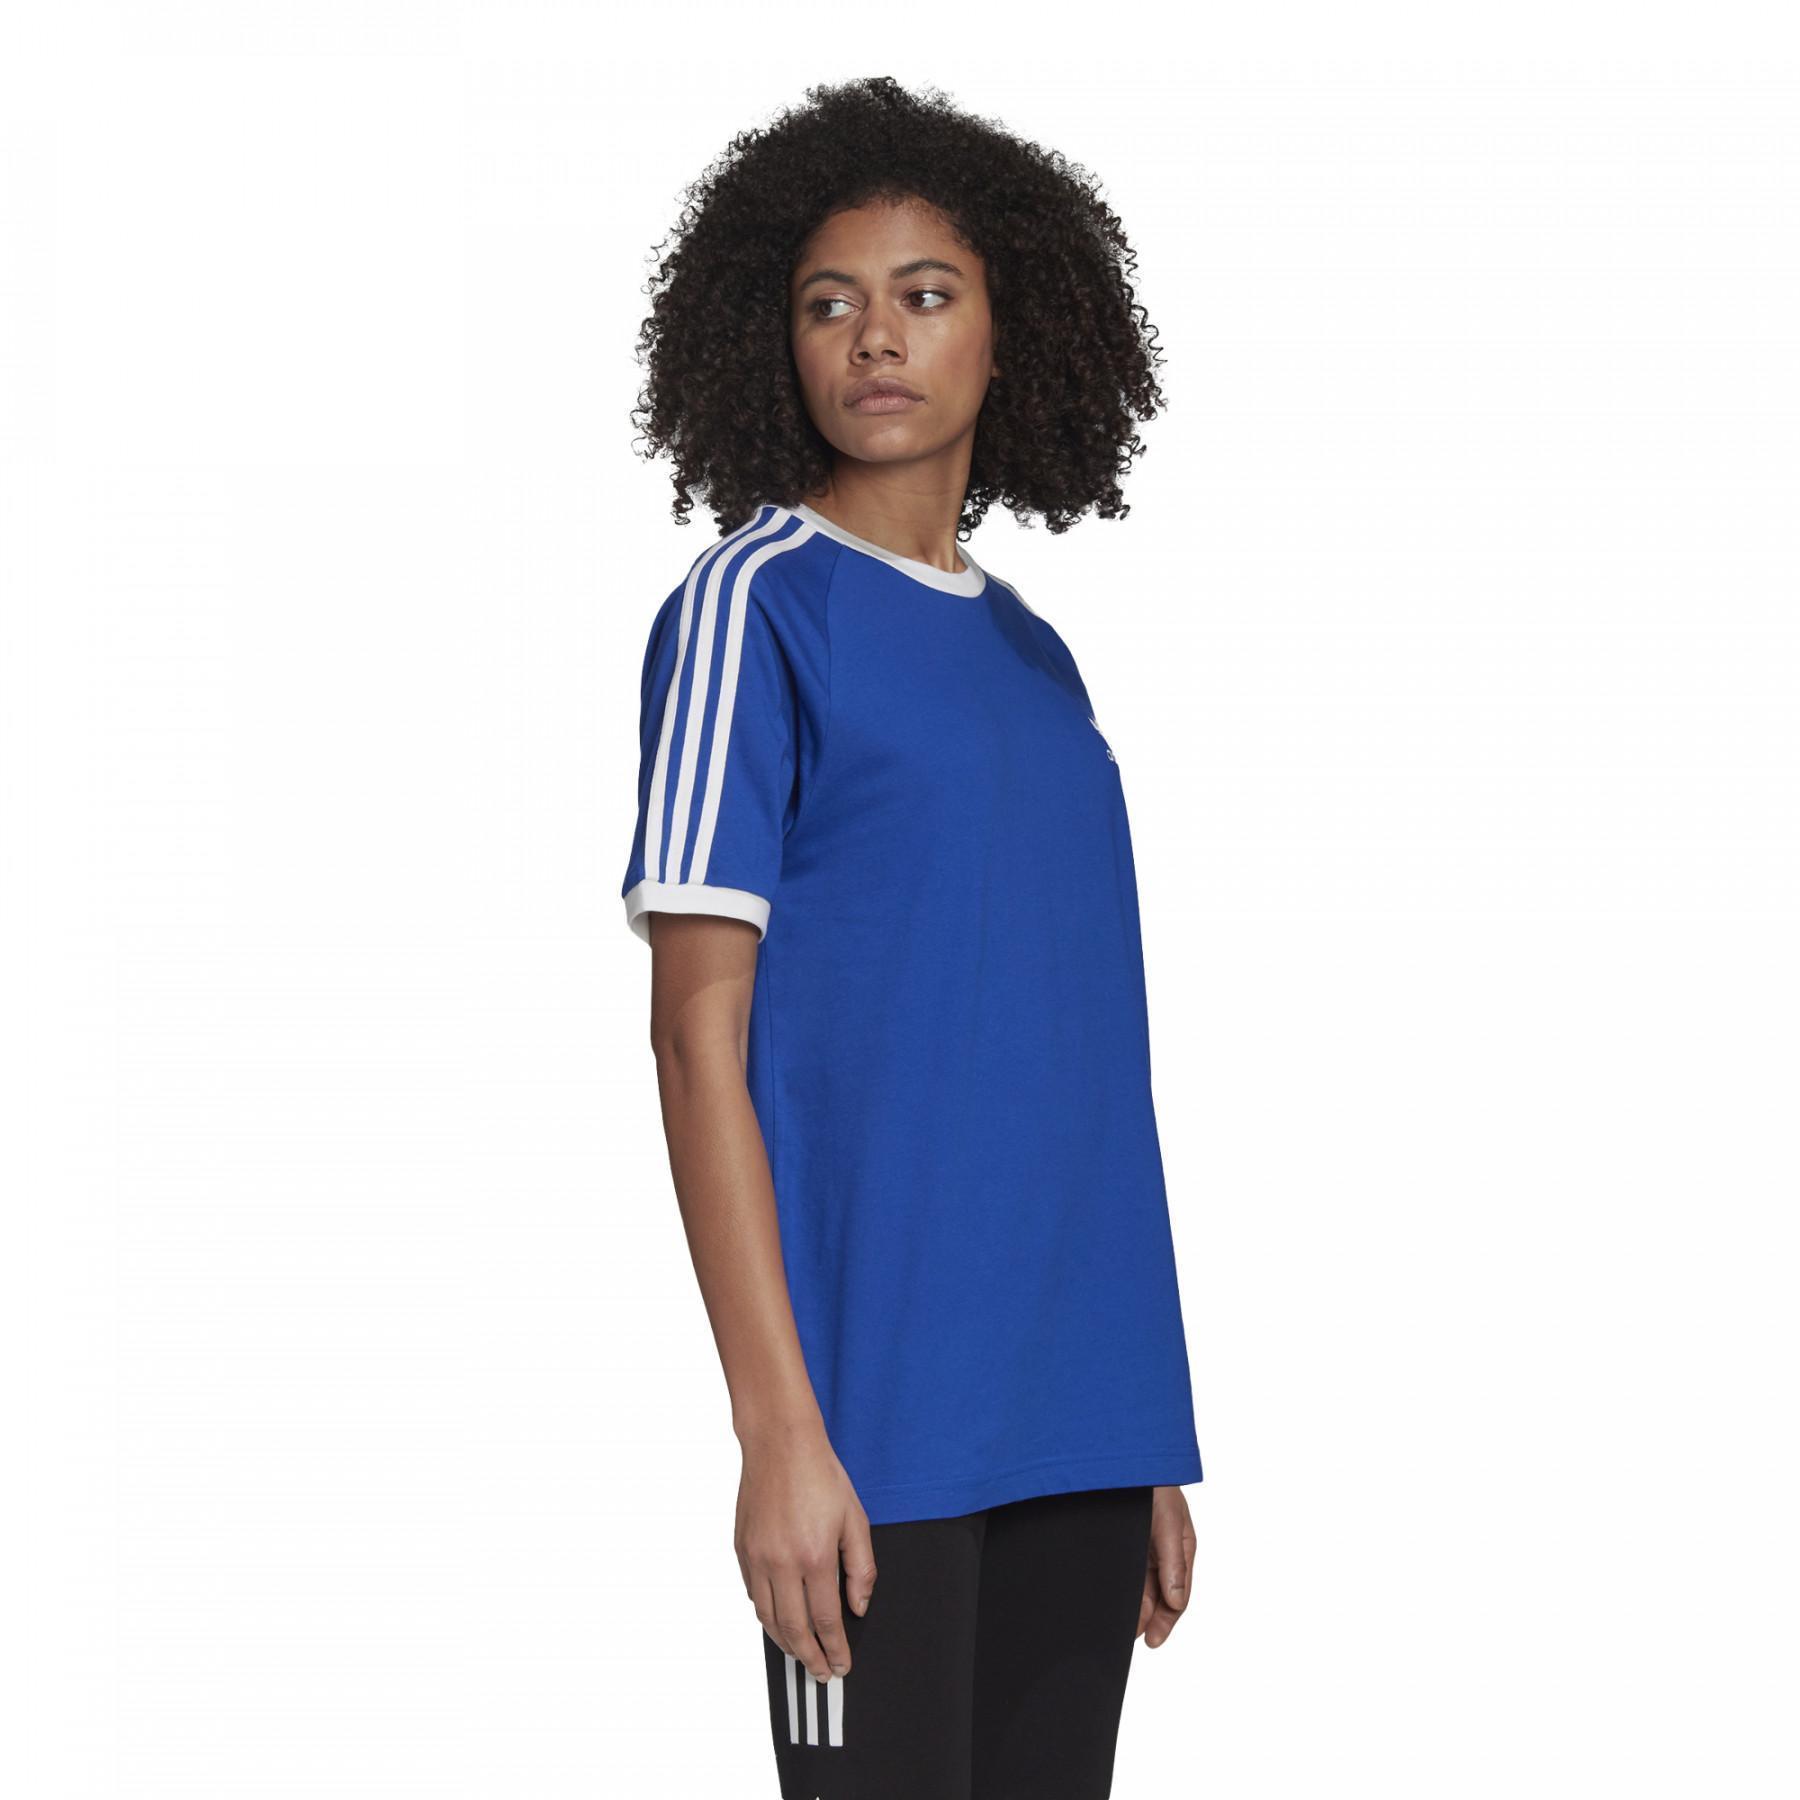 Koszulka damska adidas Originals 3-Bandes Trefoil